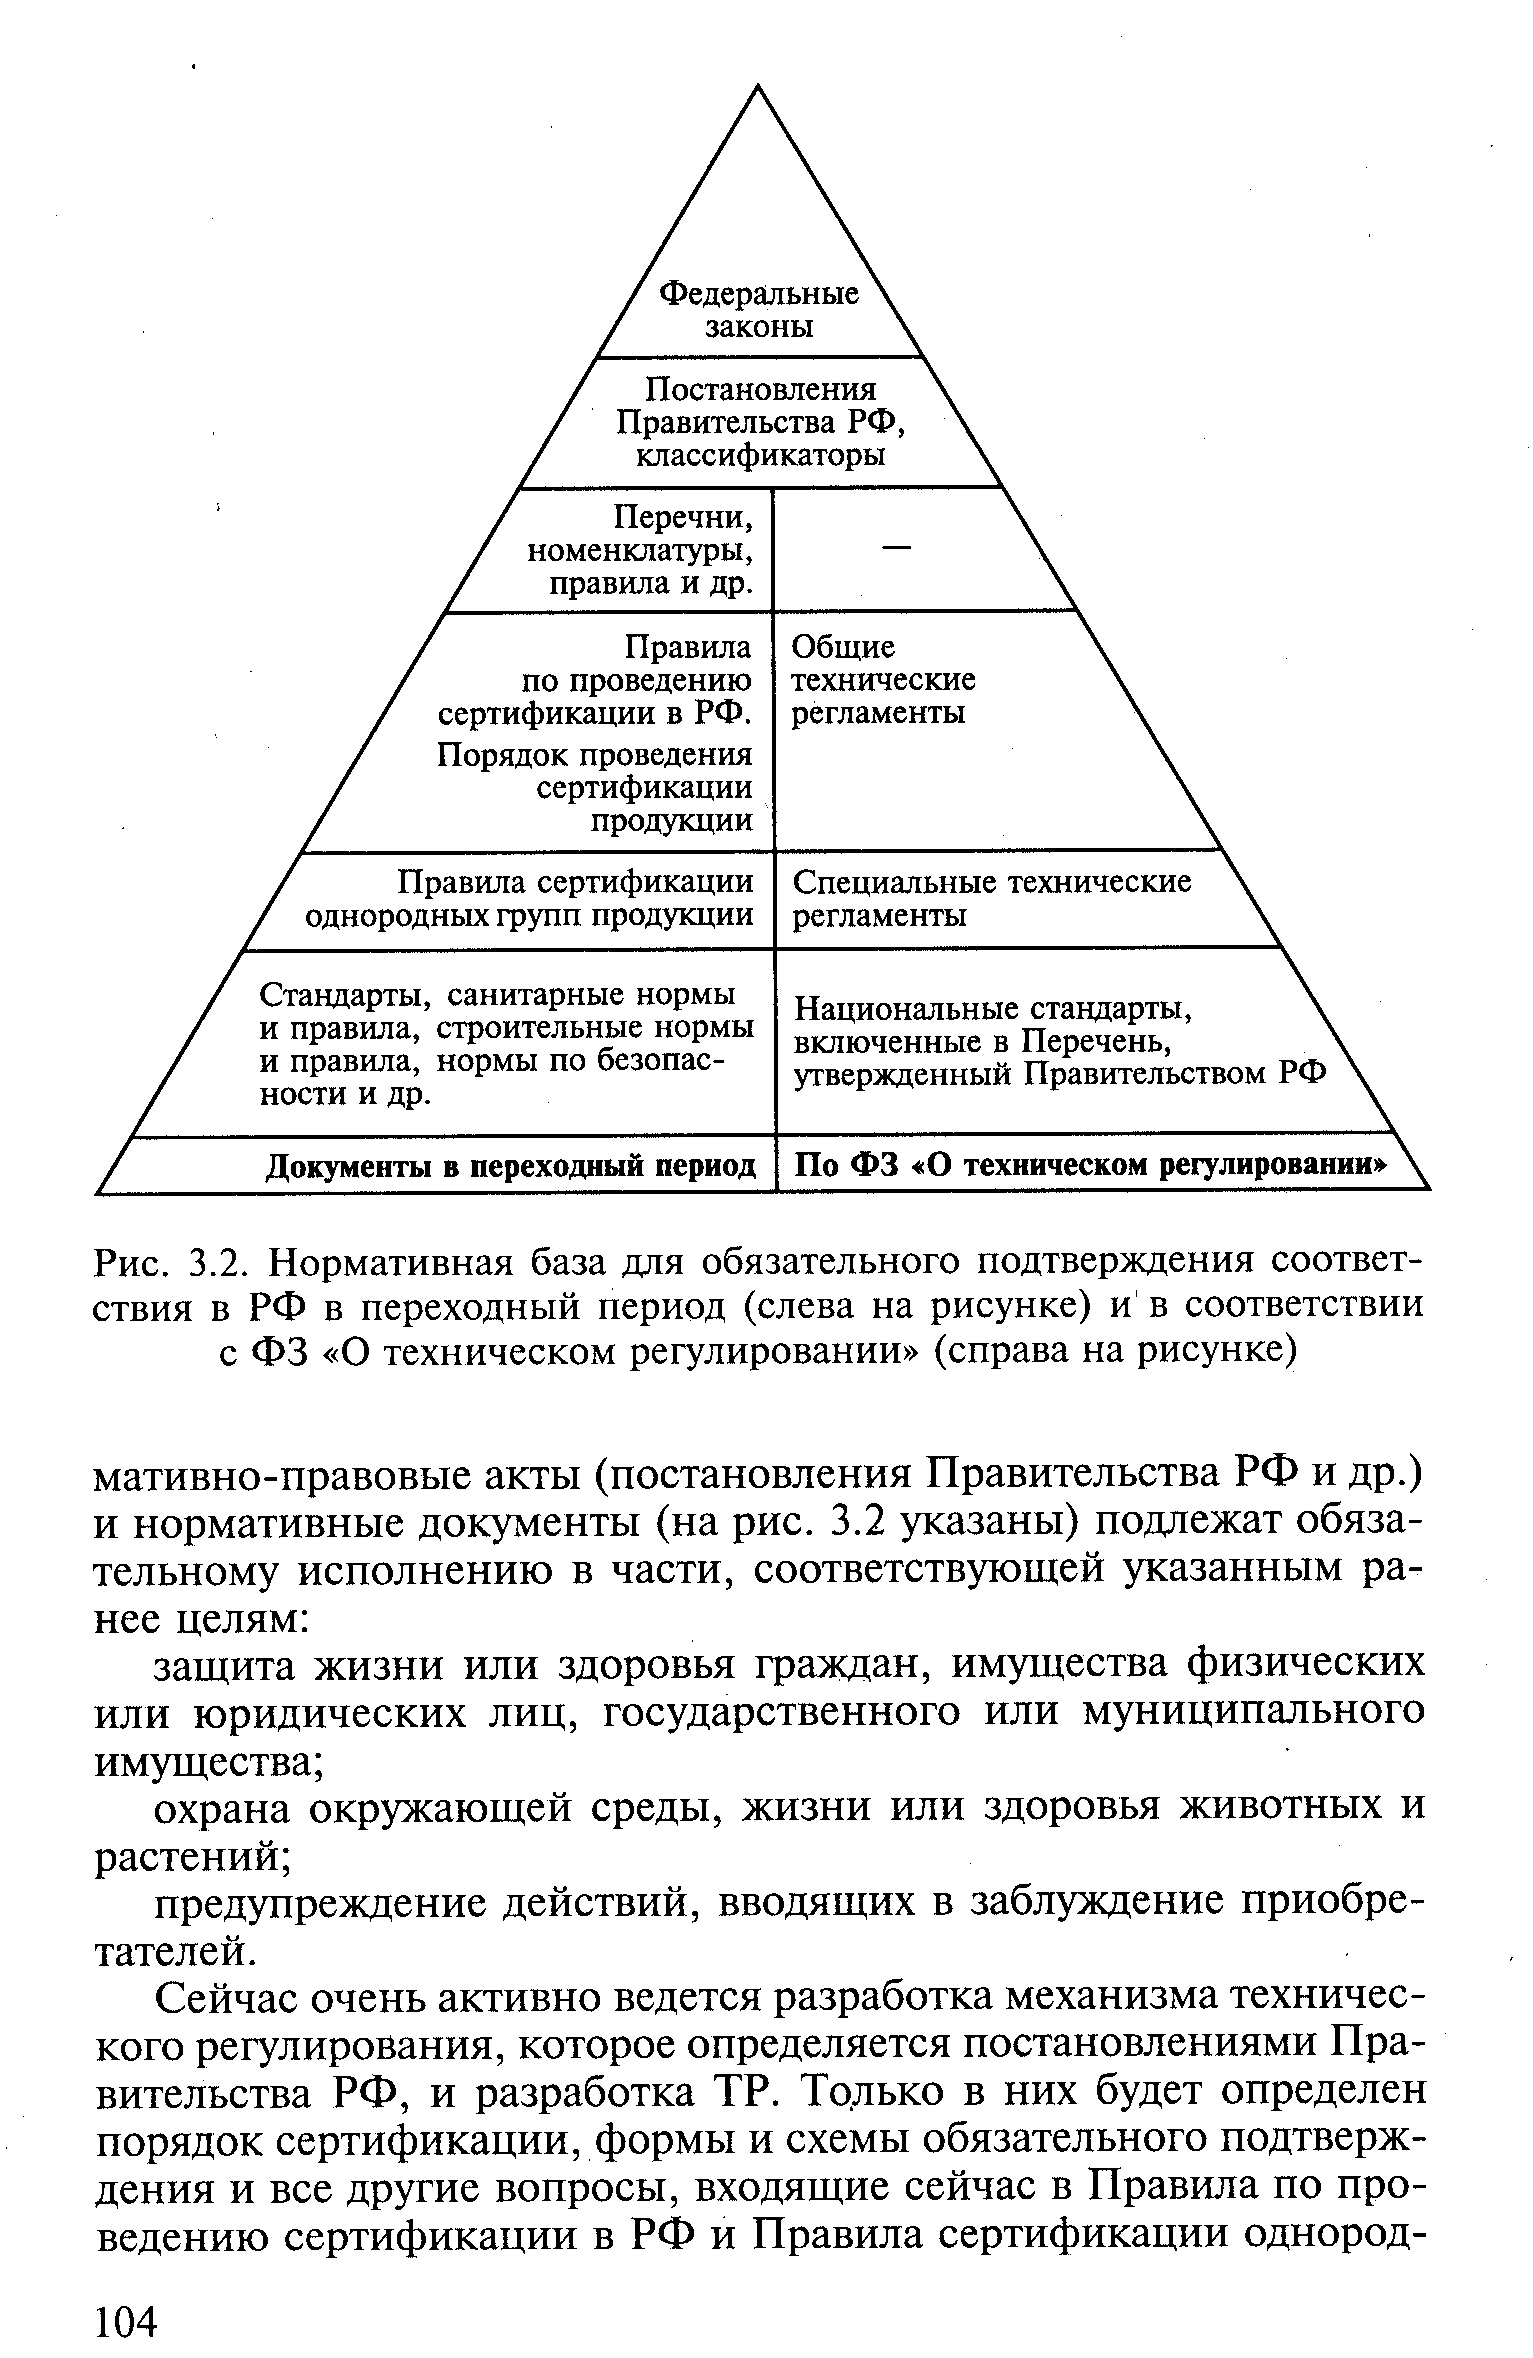 Рис. 3.2. Нормативная база для обязательного подтверждения соответствия в РФ в переходный период (слева на рисунке) и в соответствии с ФЗ О техническом регулировании (справа на рисунке)
